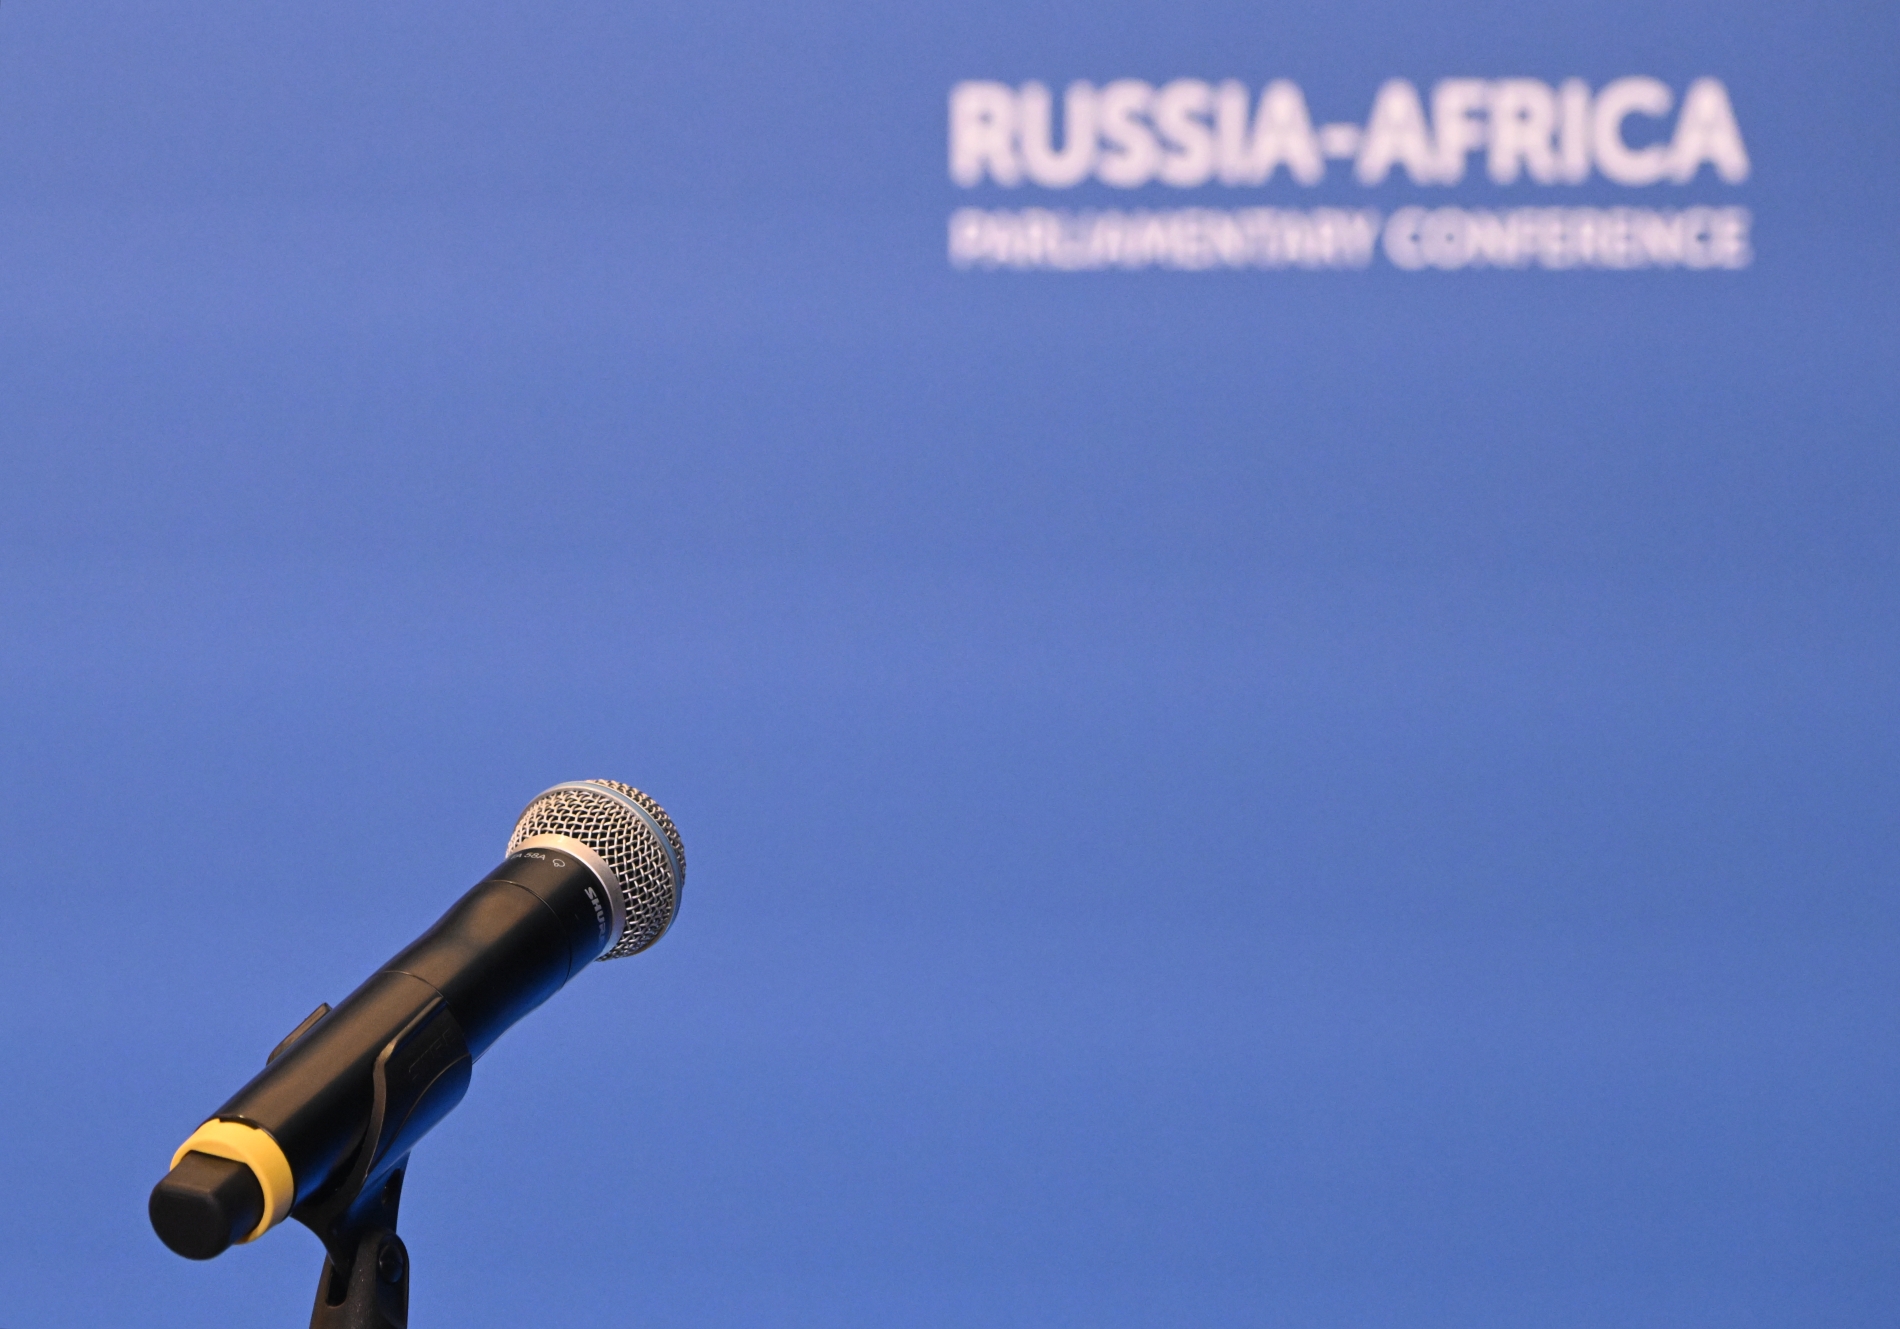  В Москве проходит международная парламентская конференция "Россия - Африка"